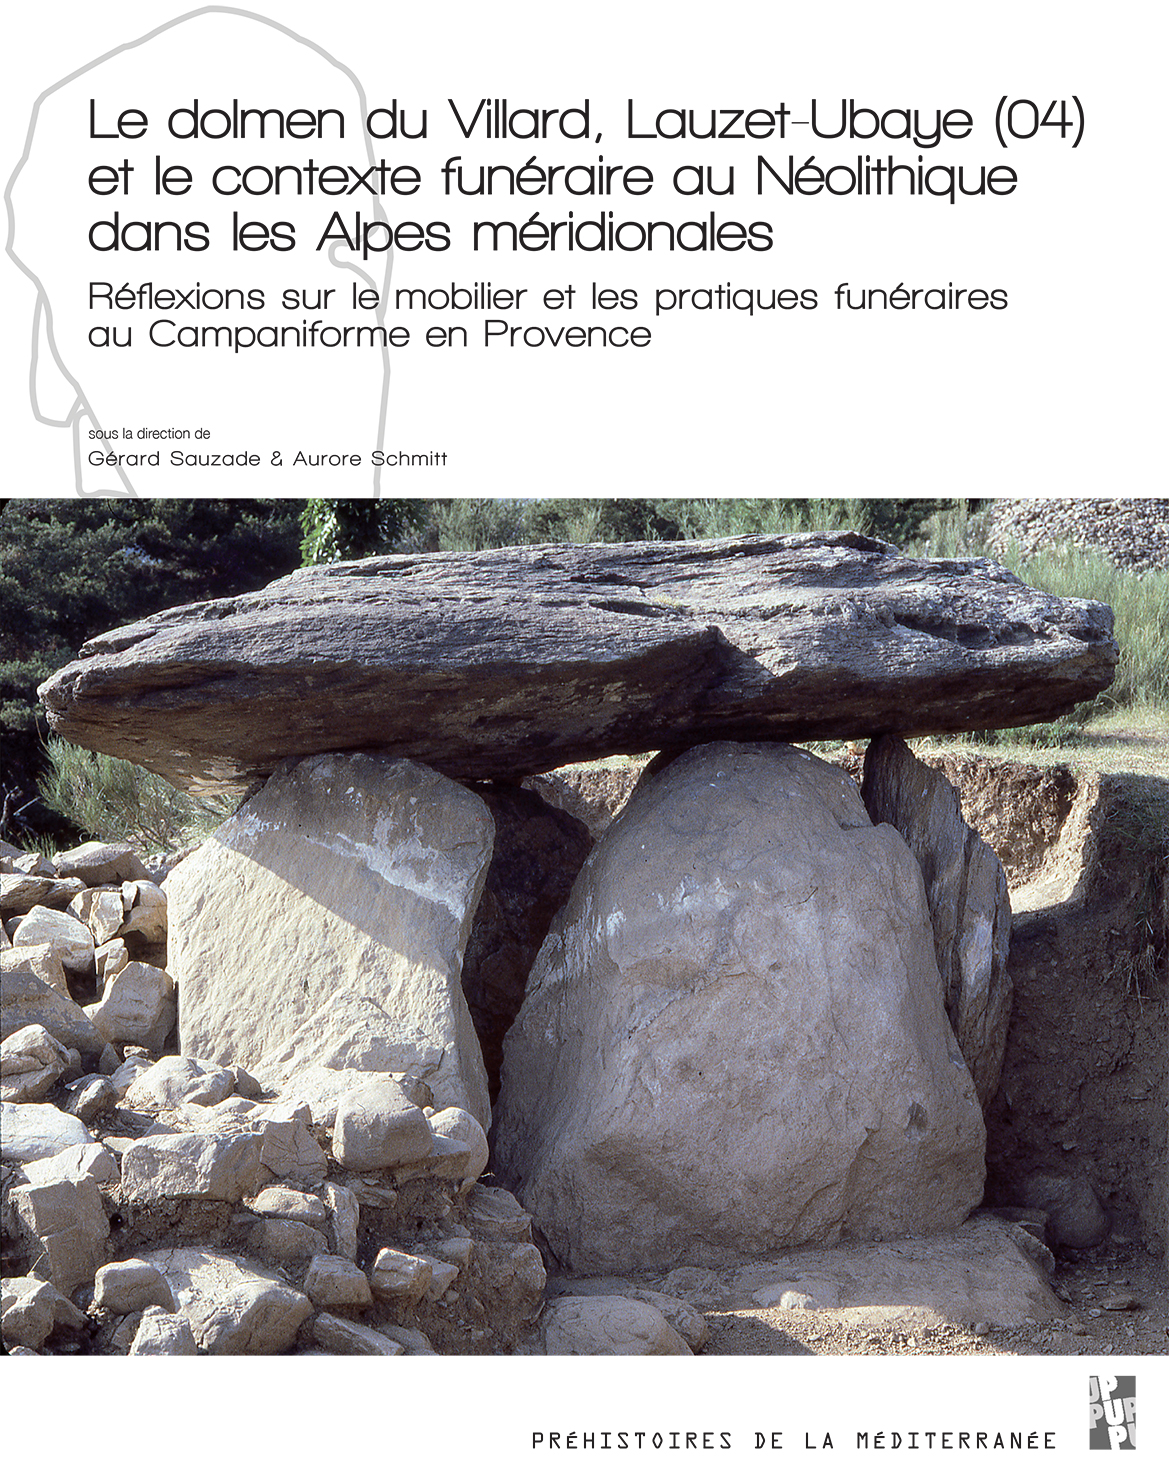 Le dolmen du Villard, Lauzet-Ubaye (04) et le contexte funéraire au Néolithique dans les Alpes méridionales. Réflexions sur le mobilier et les pratiques funéraires au Campaniforme en Provence, 2020, 220 p.